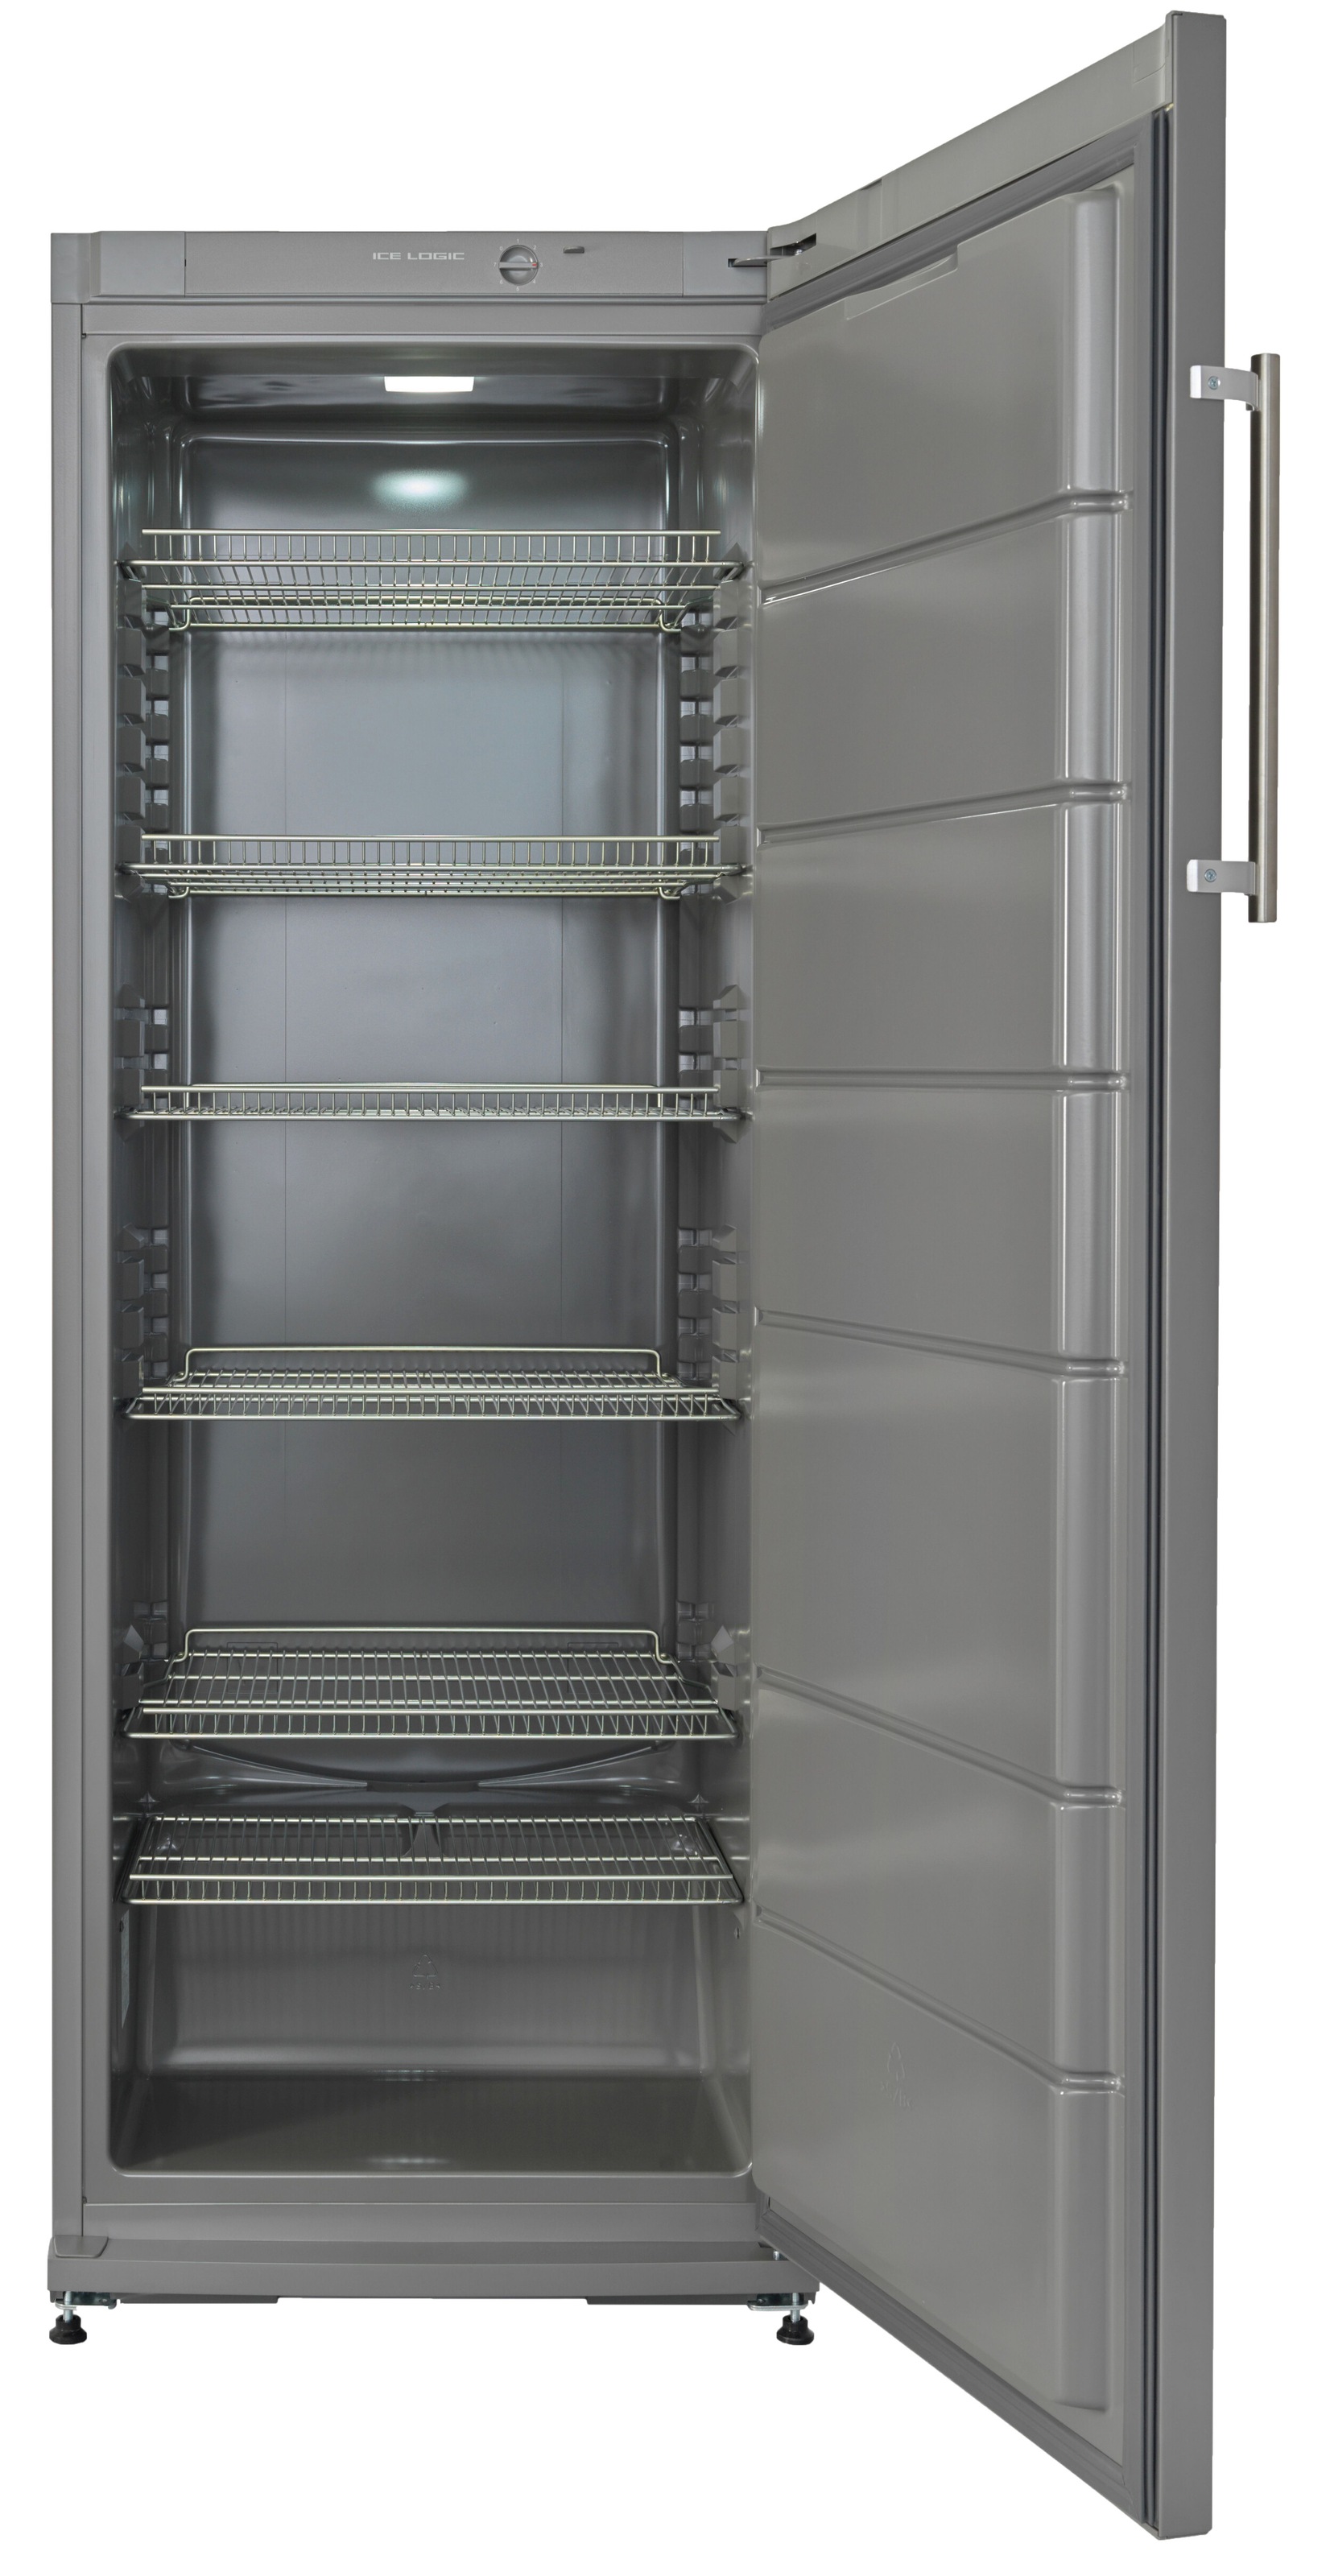 NABO Getränkekühlschrank, FK 2960, 163 cm hoch, 60 cm breit jetzt kaufen  bei OTTO | Getränkekühlschränke